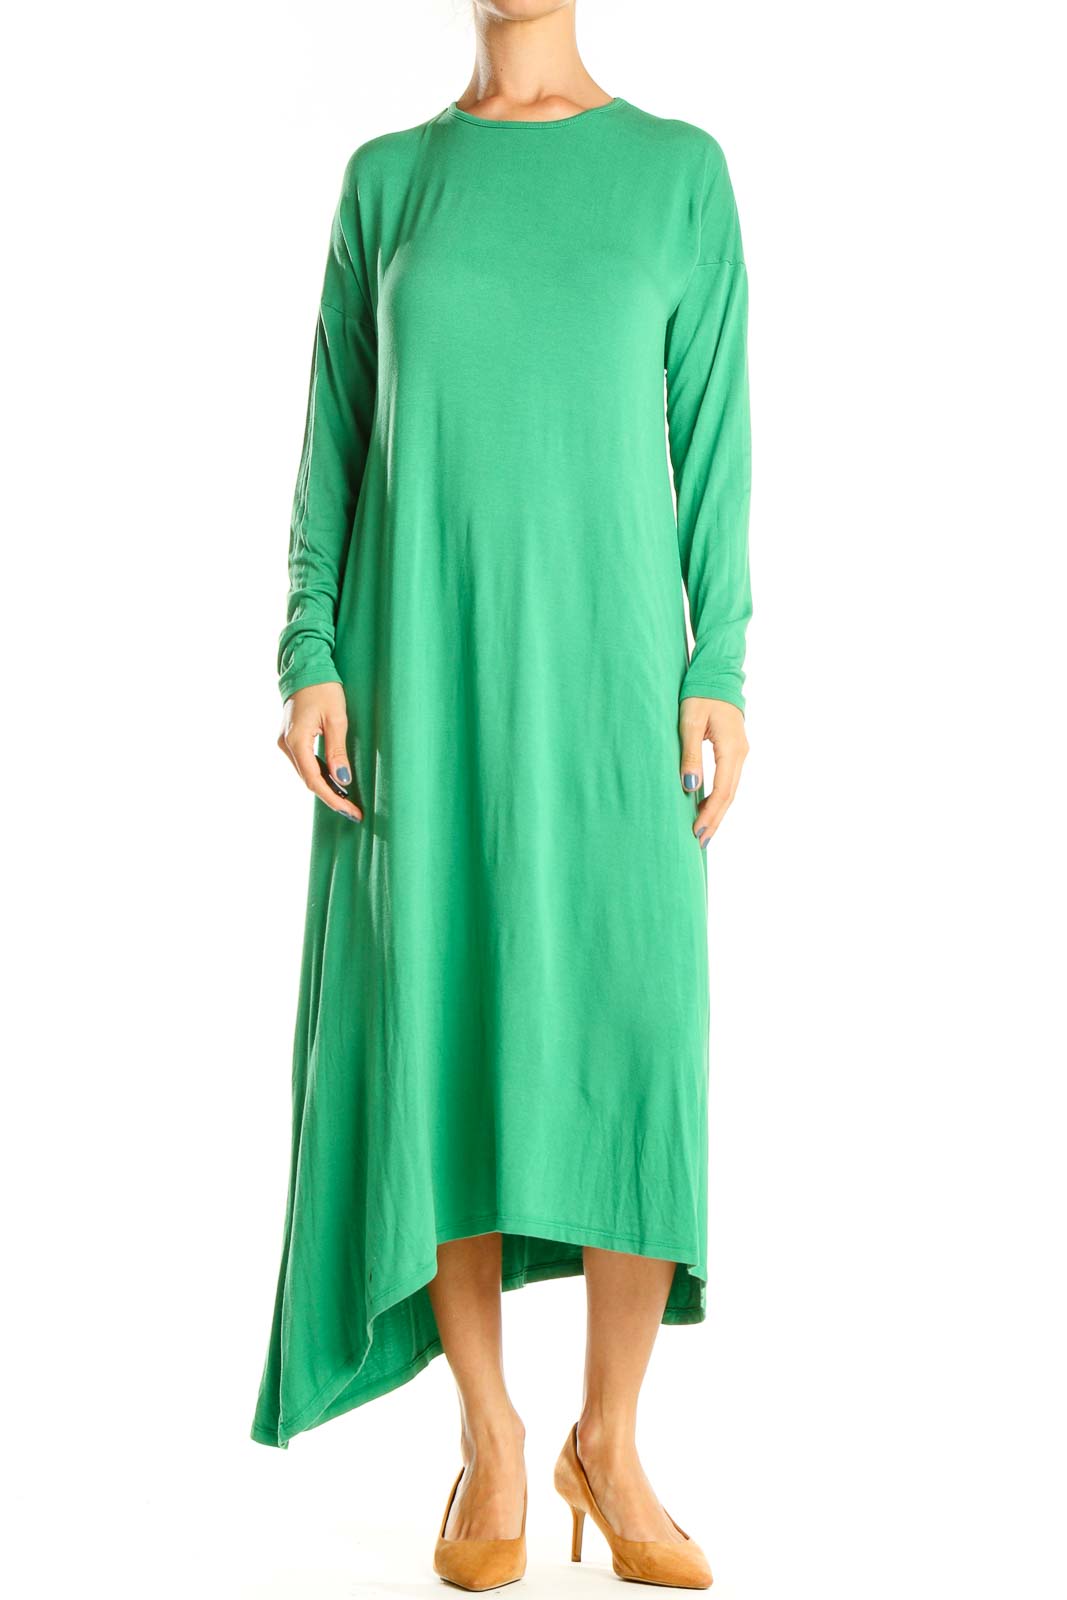 Green Classic Long Sleeve Column Dress Front